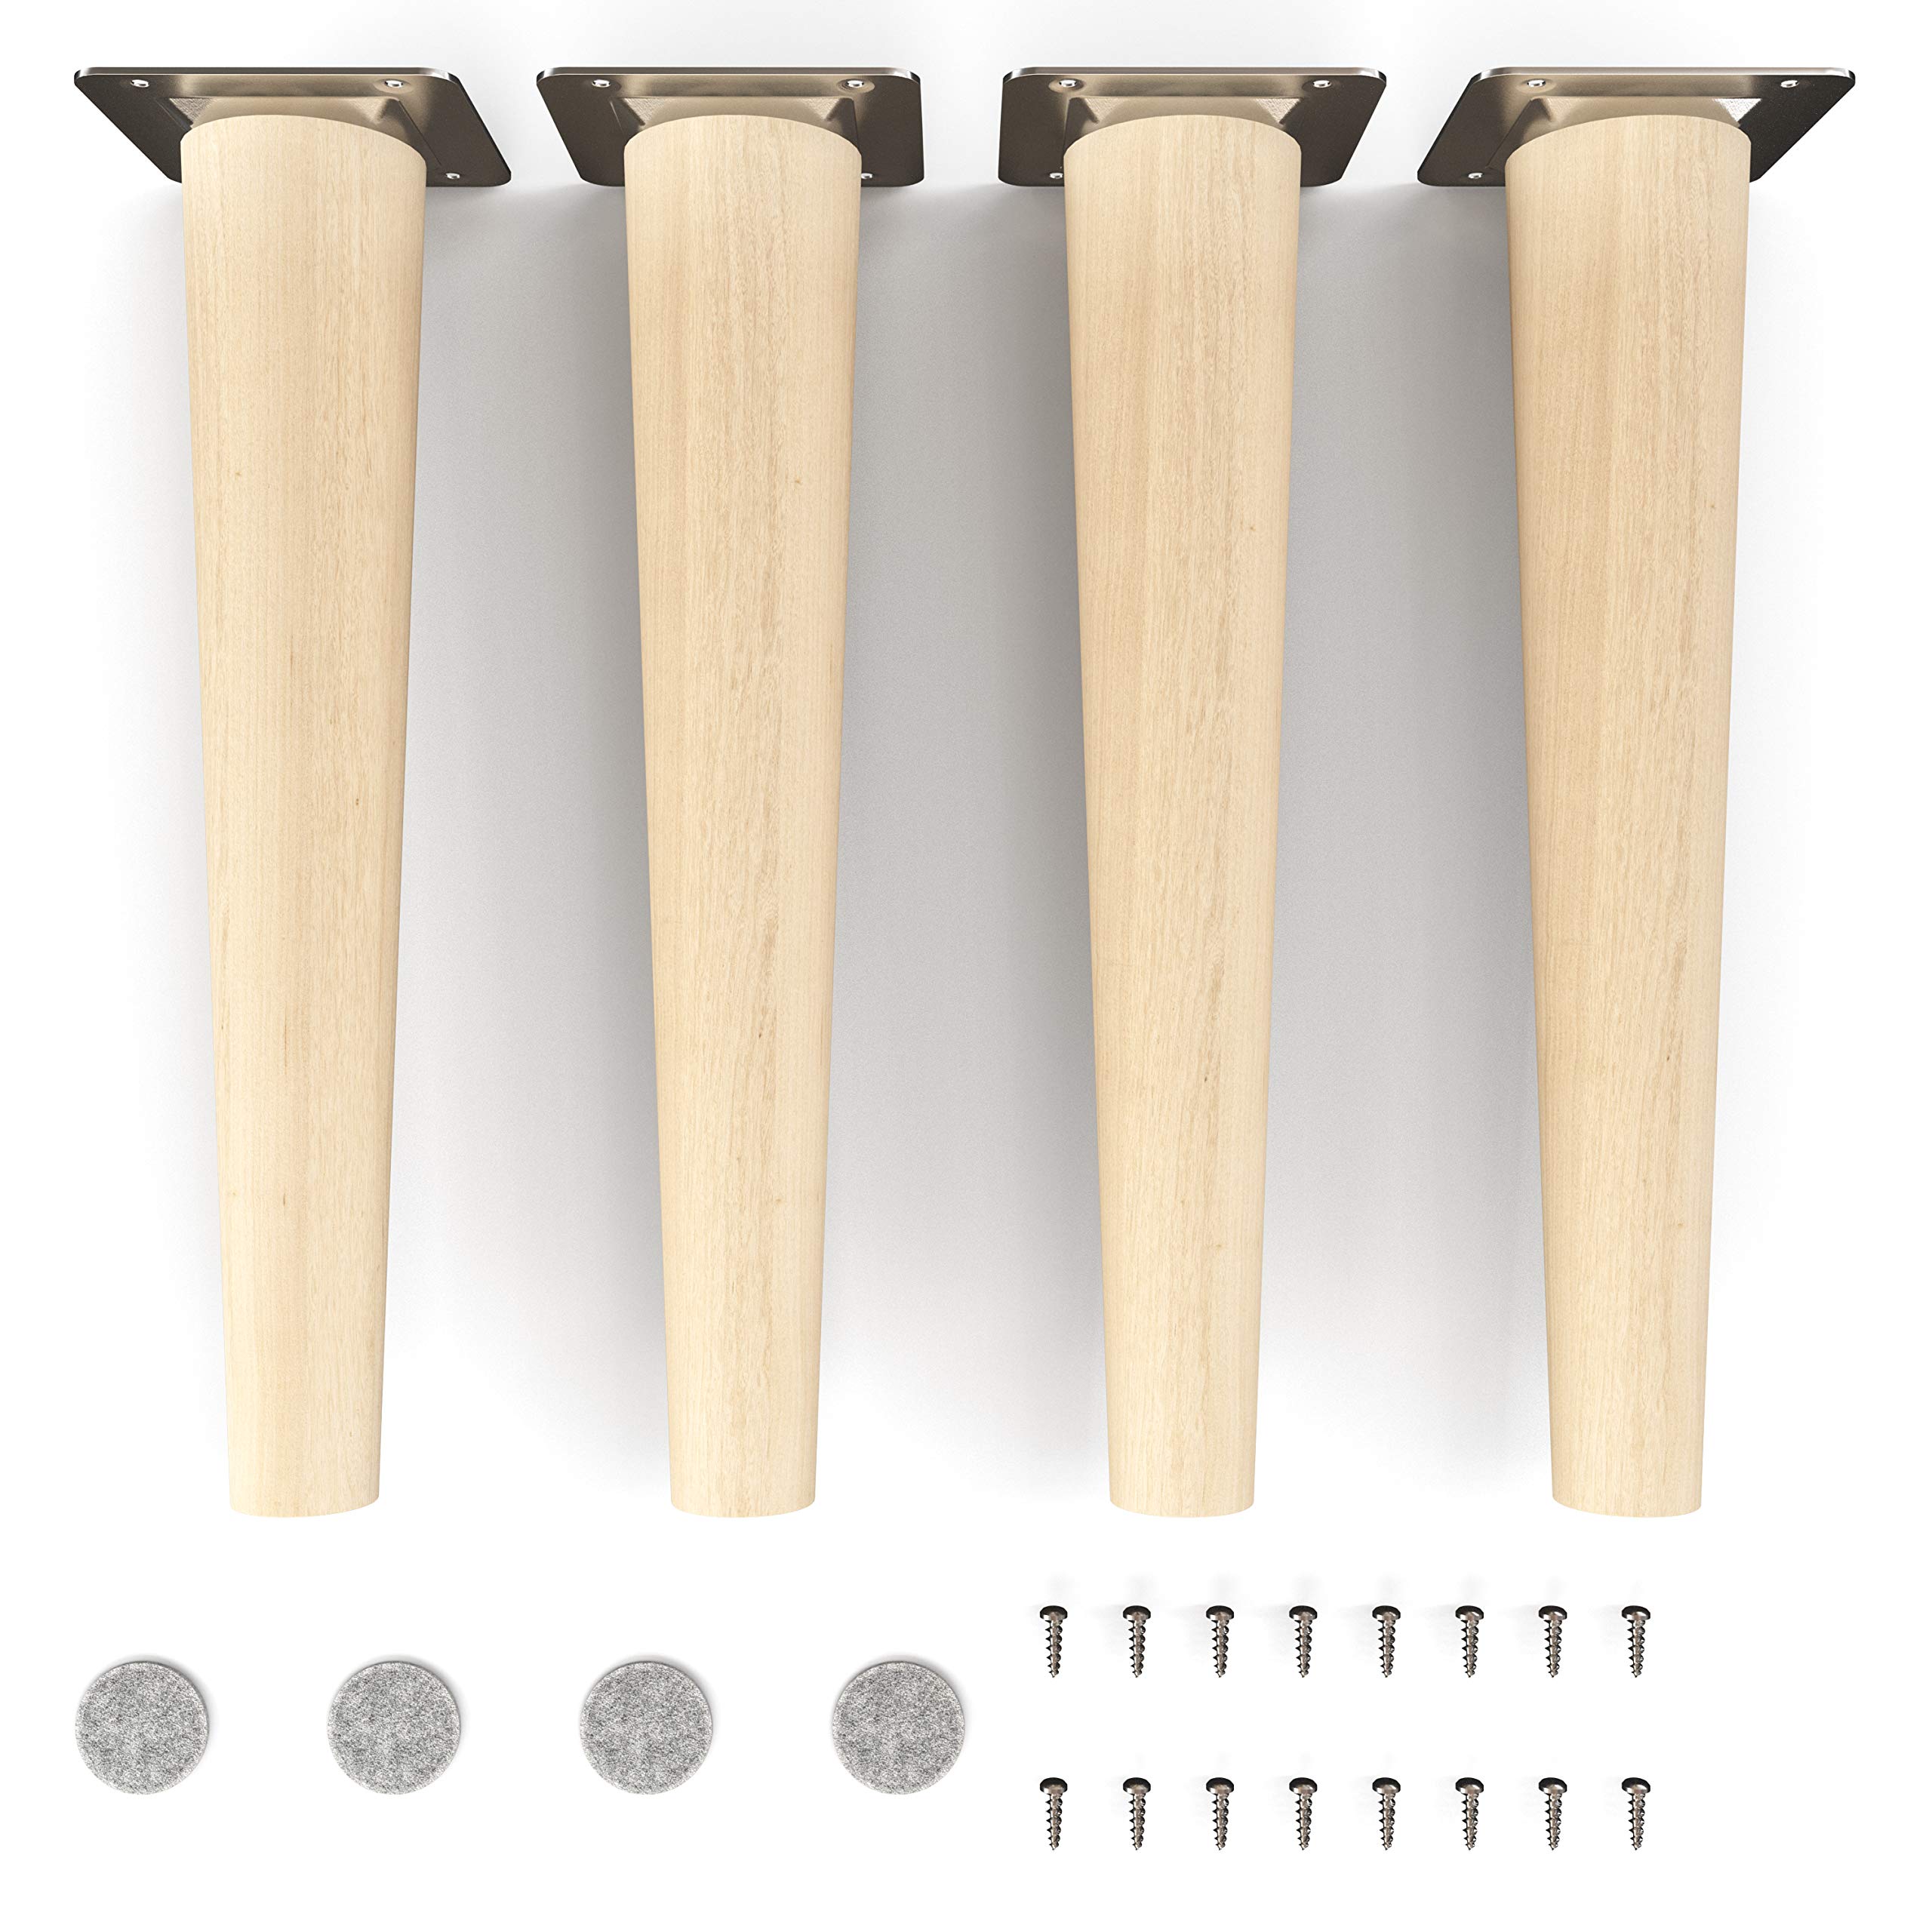 sossai® Holz-Möbelfüße - Clif Round | Natur (unbehandelt) | Höhe: 25 cm | HMF1 | rund, konisch (gerade Ausführung) | Material: Massivholz (Buche) | für Stühle, Tische, Schränke etc.